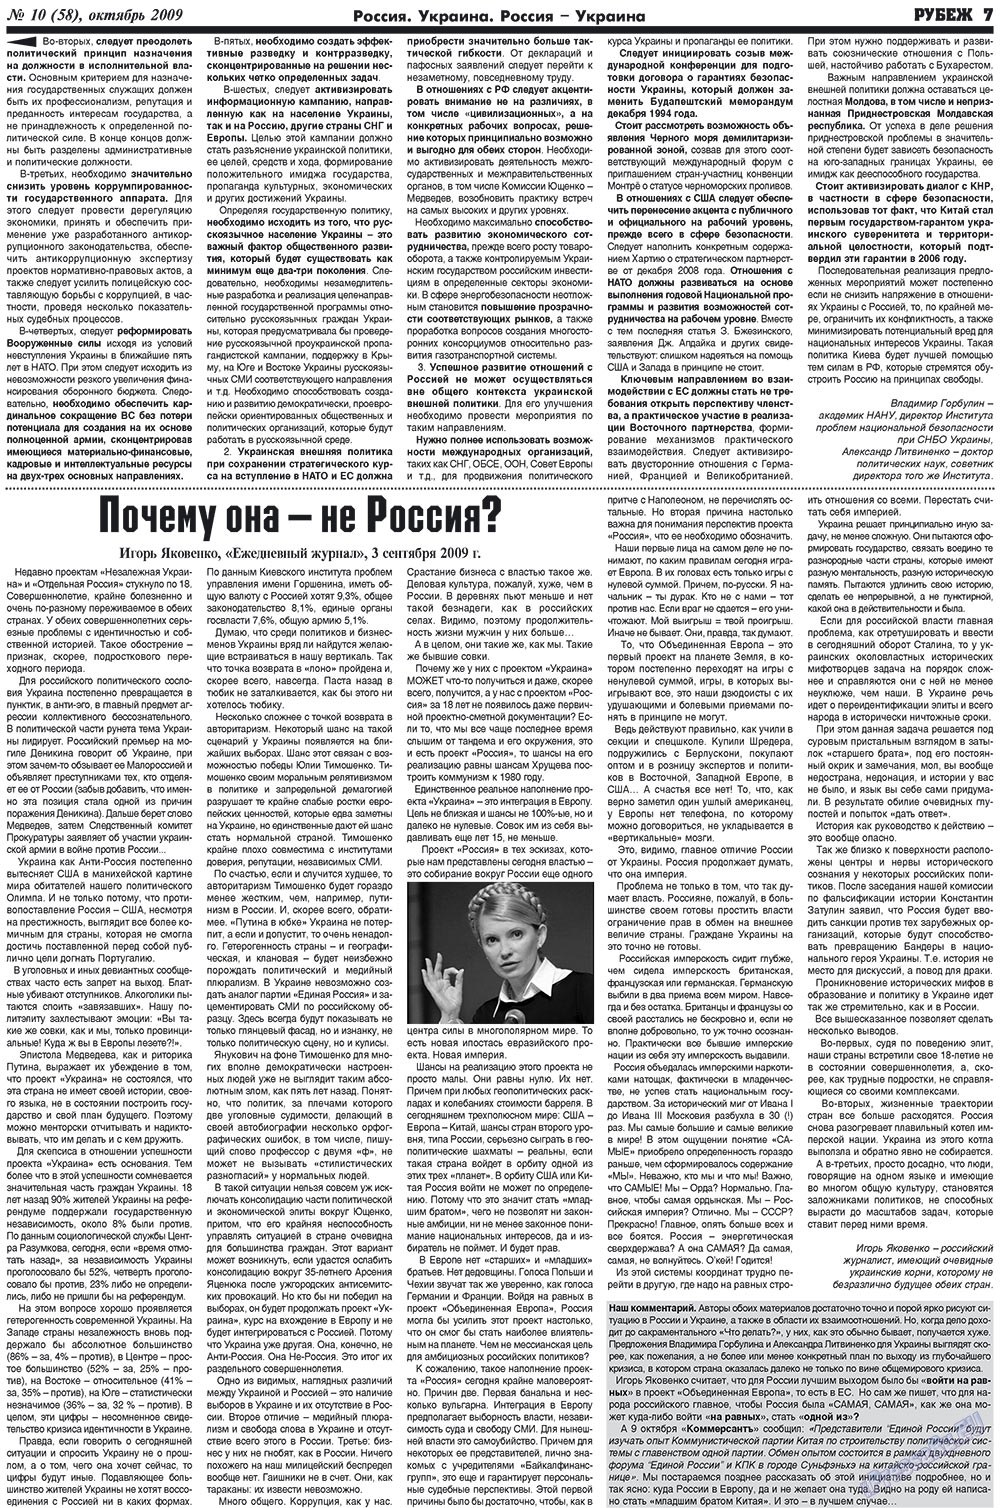 Рубеж (газета). 2009 год, номер 10, стр. 7